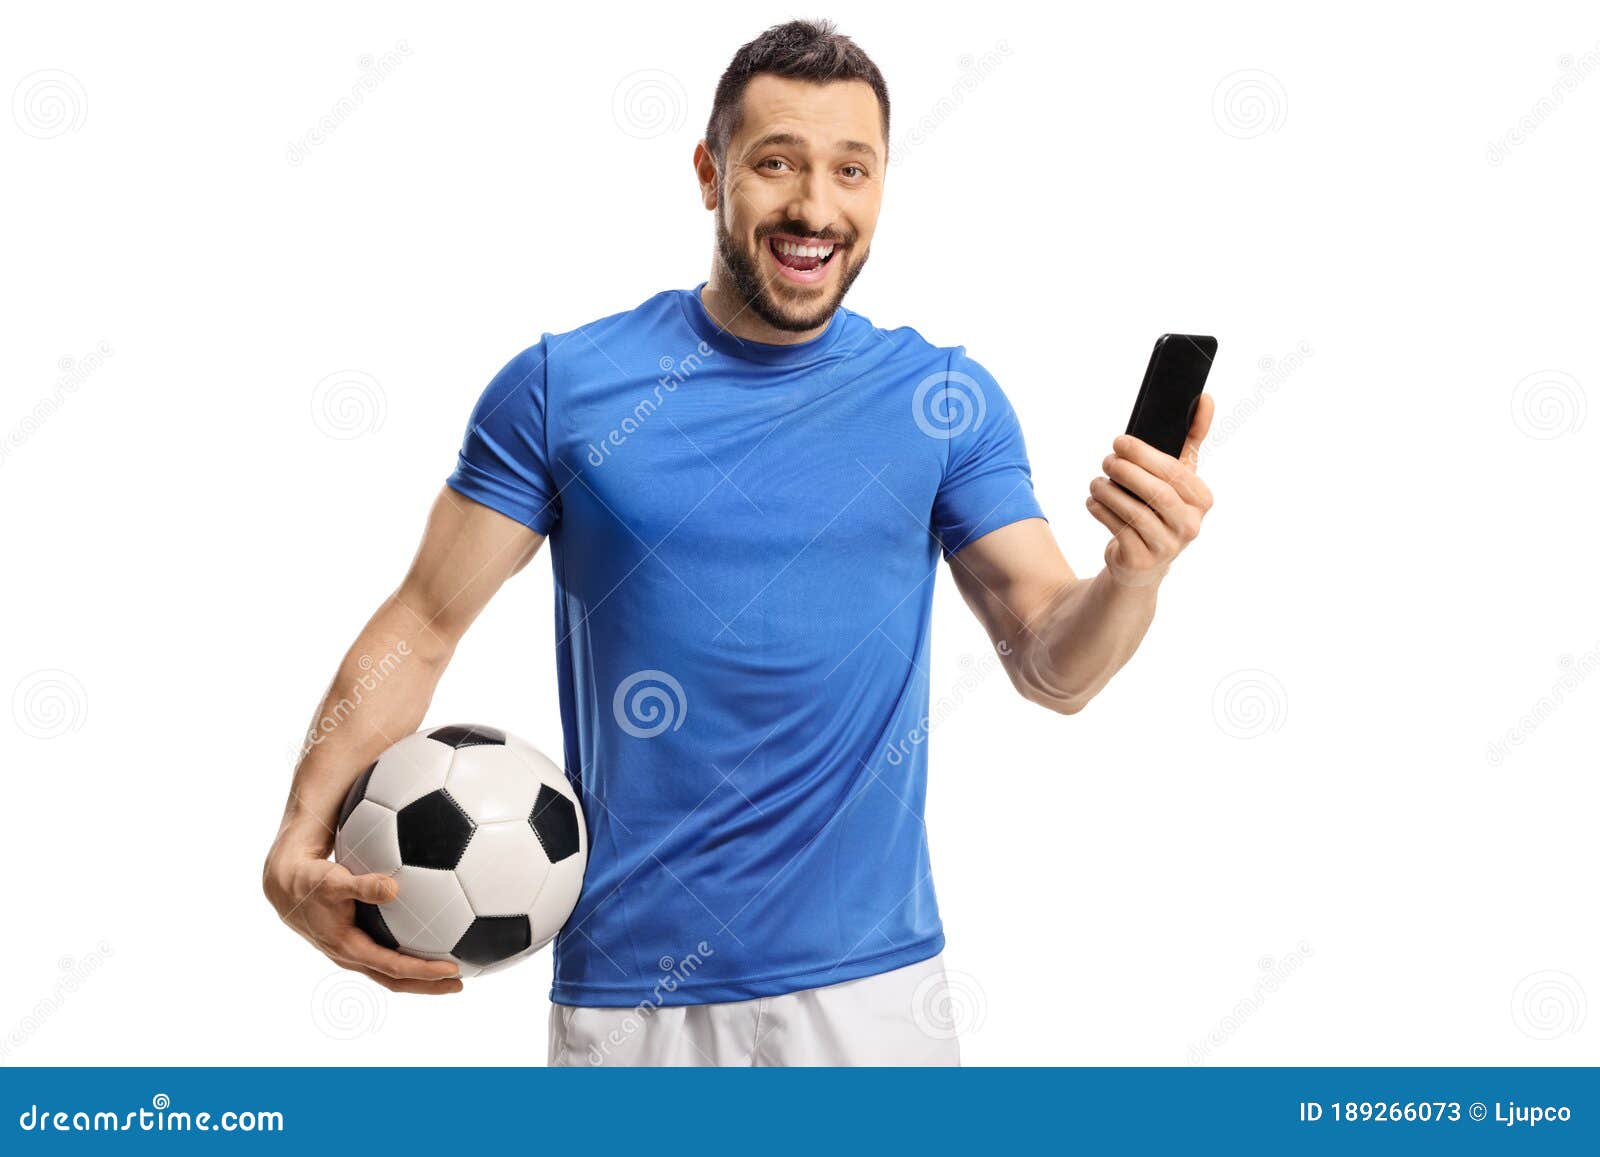 ilustração de um jogador de futebol segurando uma bola de